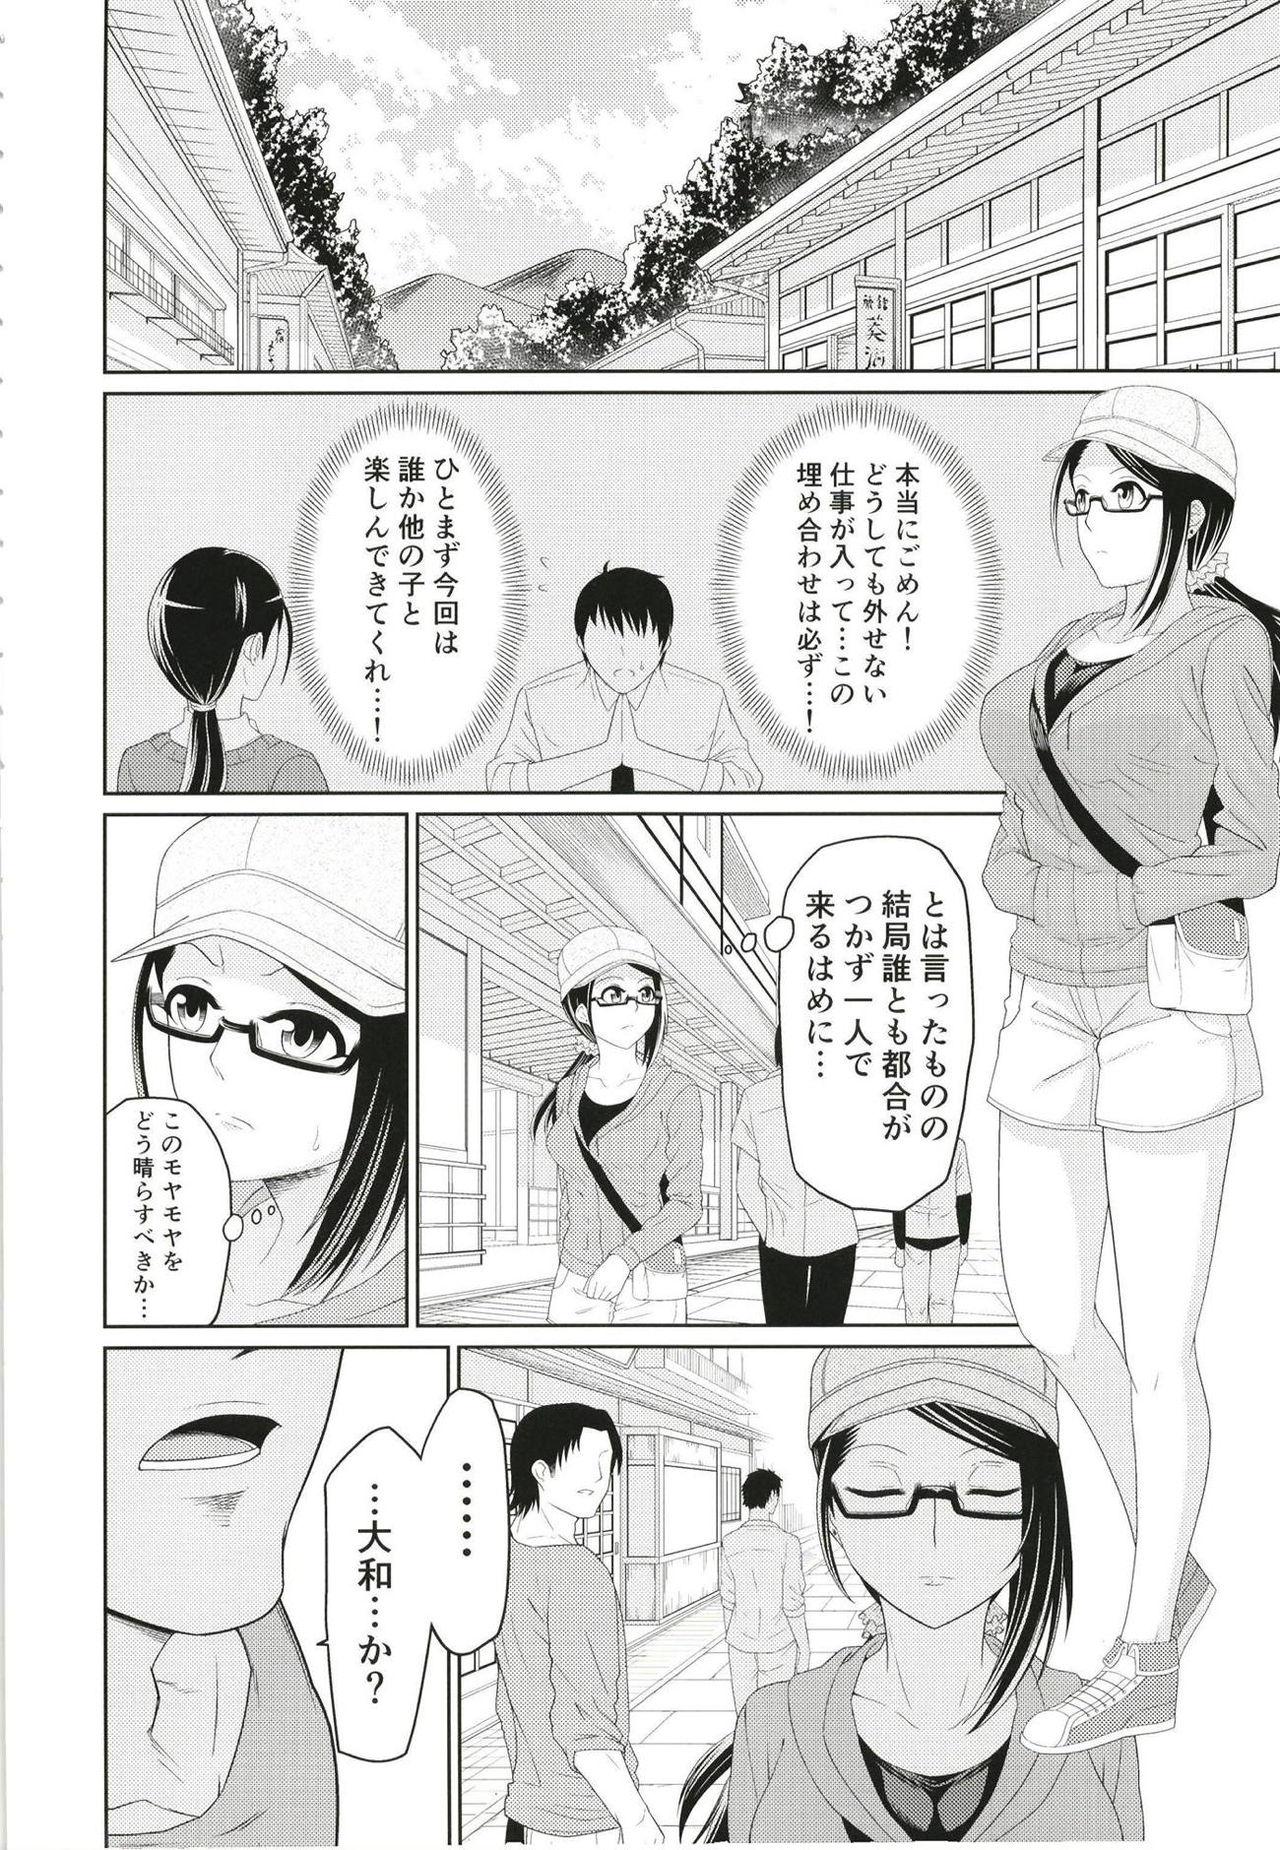 8teen Yamato Yukemuri Bojou - The idolmaster Tats - Page 3